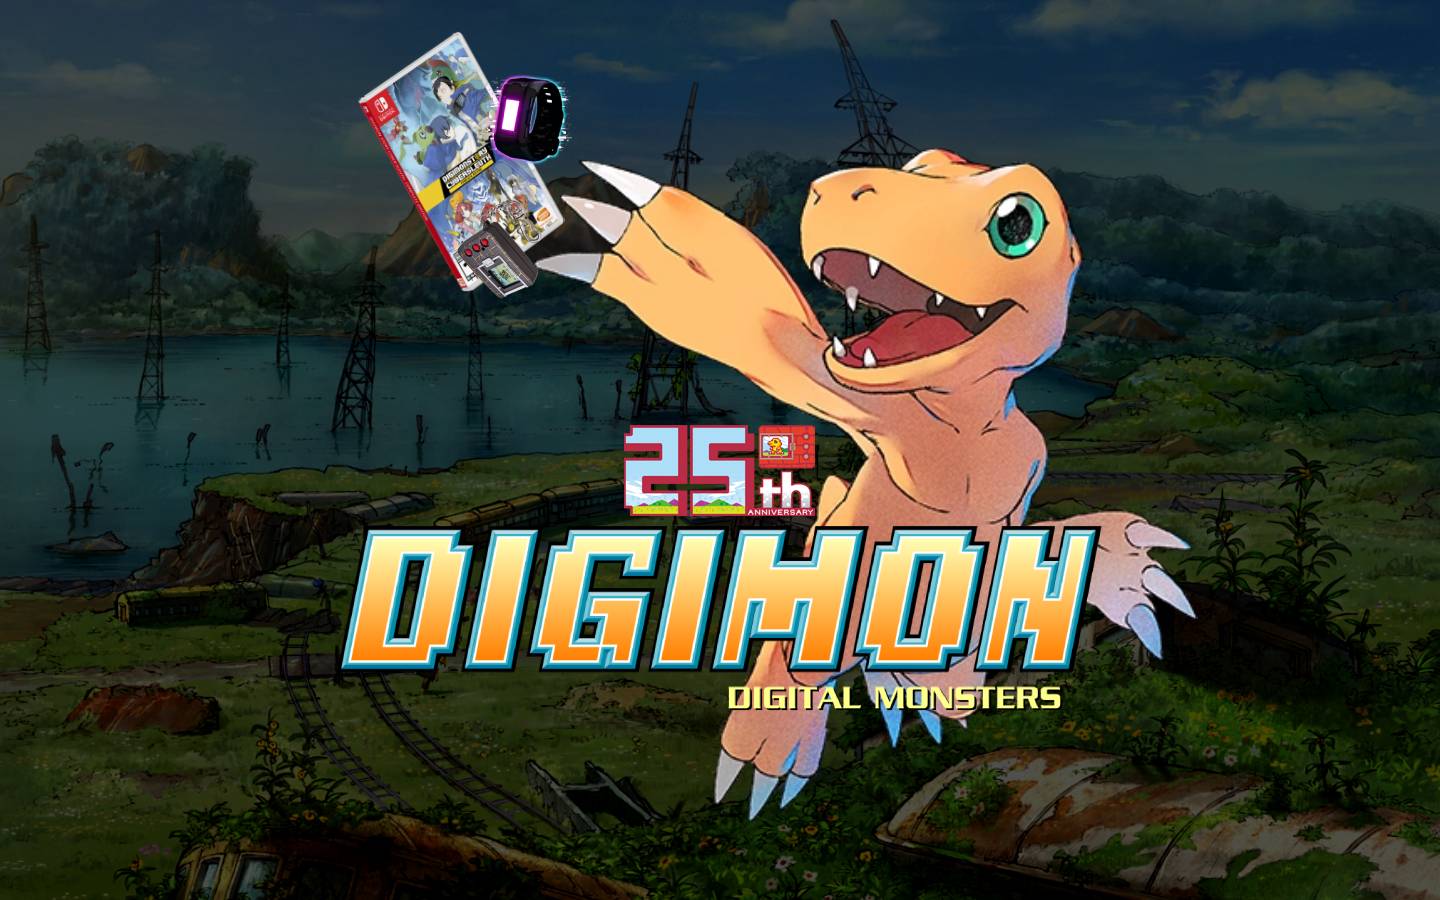 Personagens originais de Digimon voltarão adultos no filme que marca 20  anos da animação - Pipoca Moderna